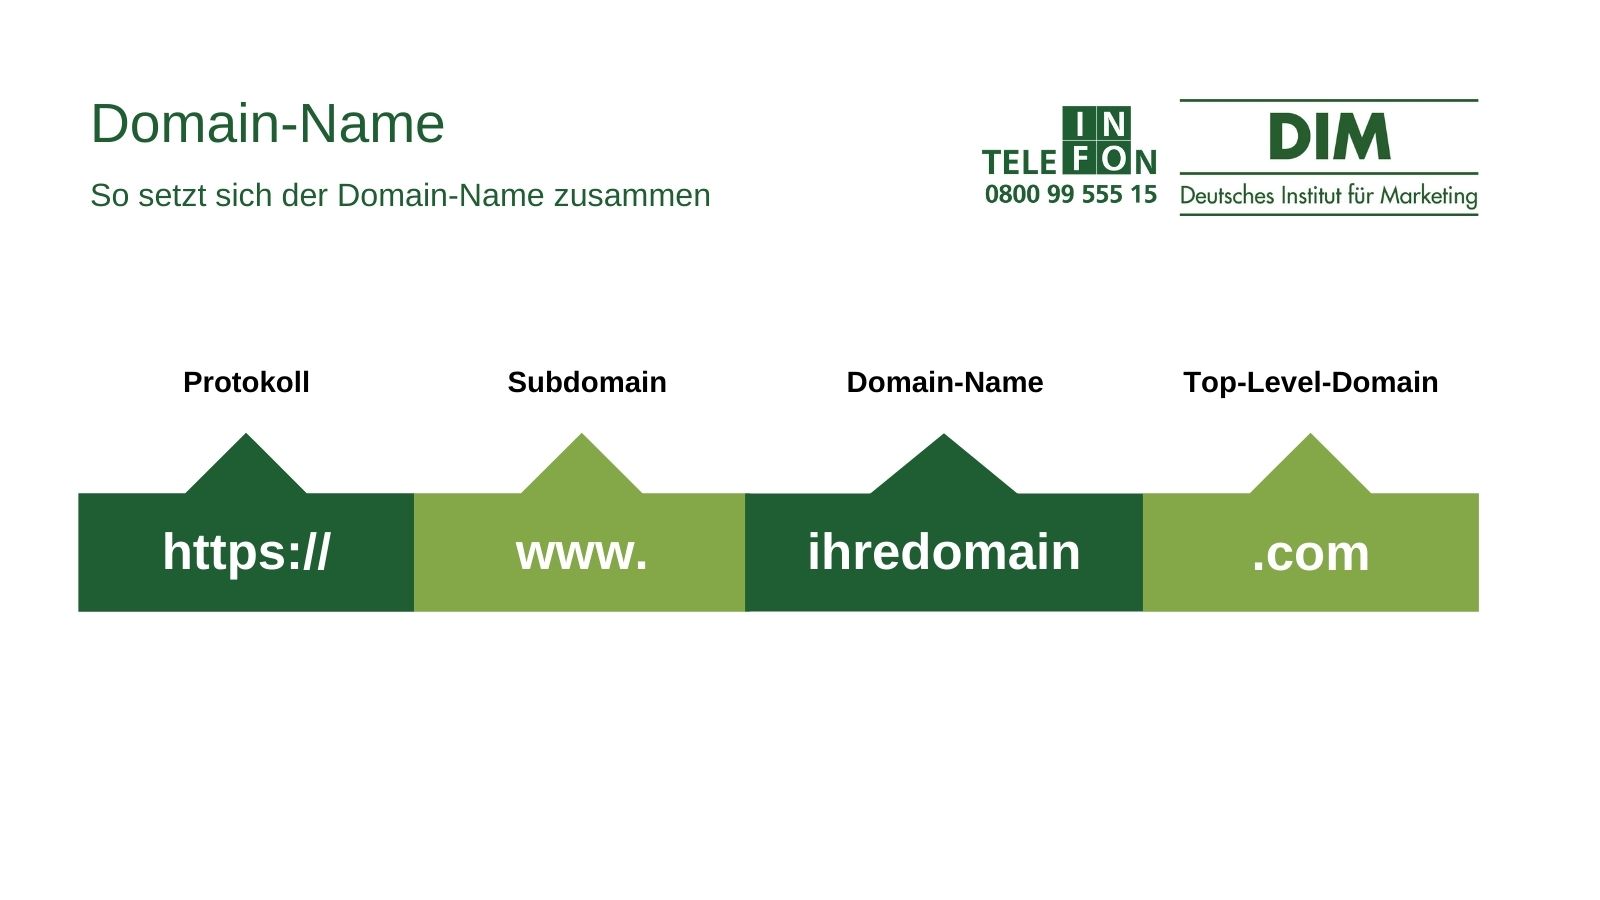 Domain-Name